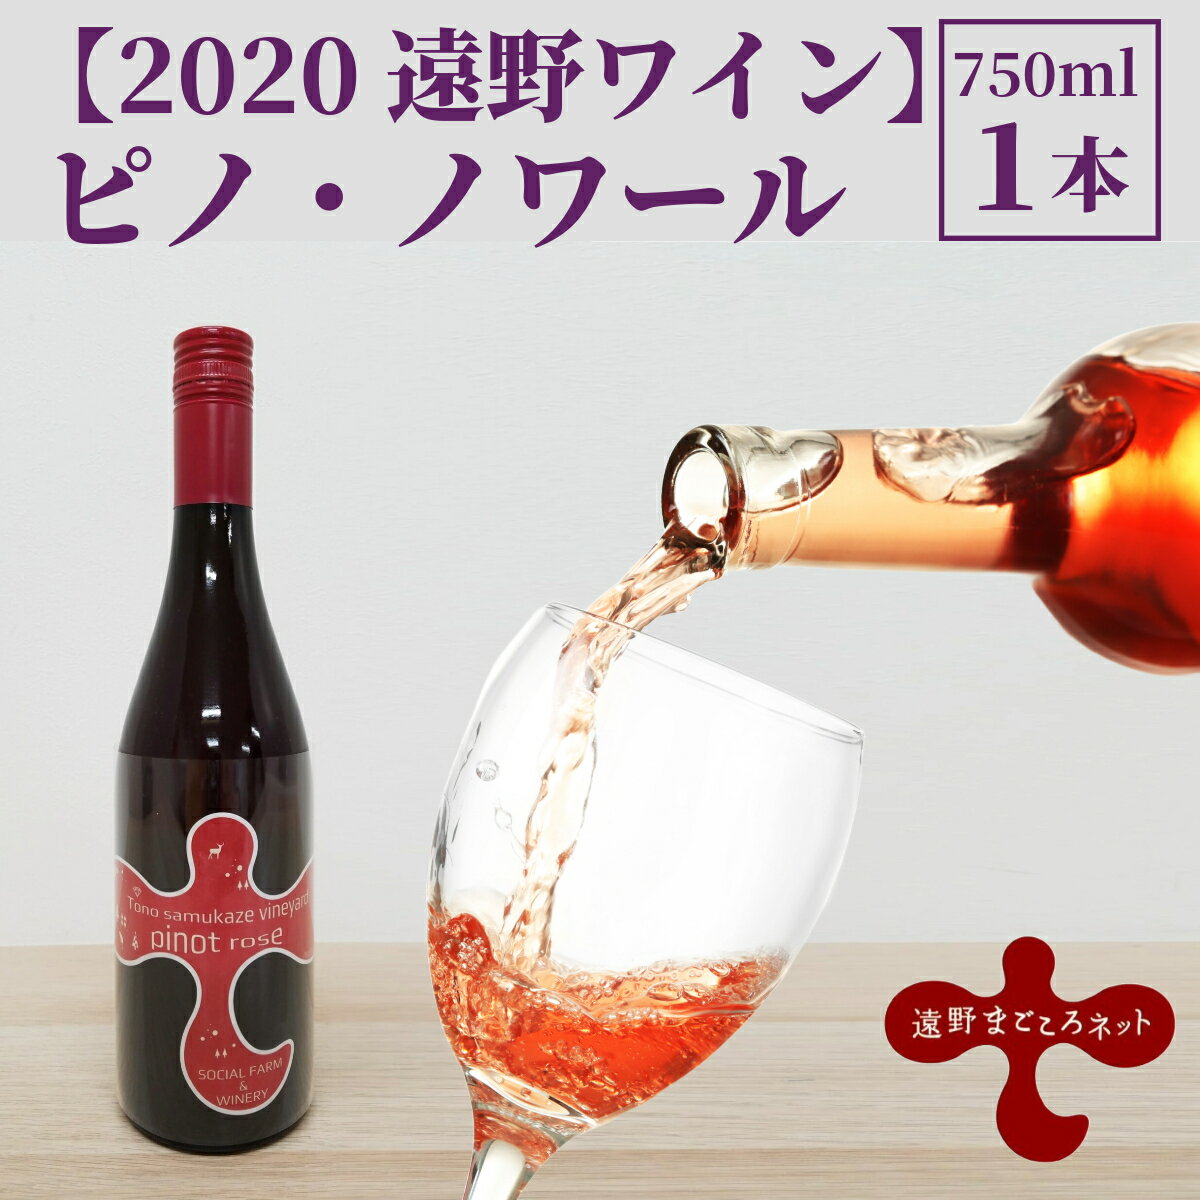 【ふるさと納税】ワイン ピノ・ノワール ロゼ 750ml 1